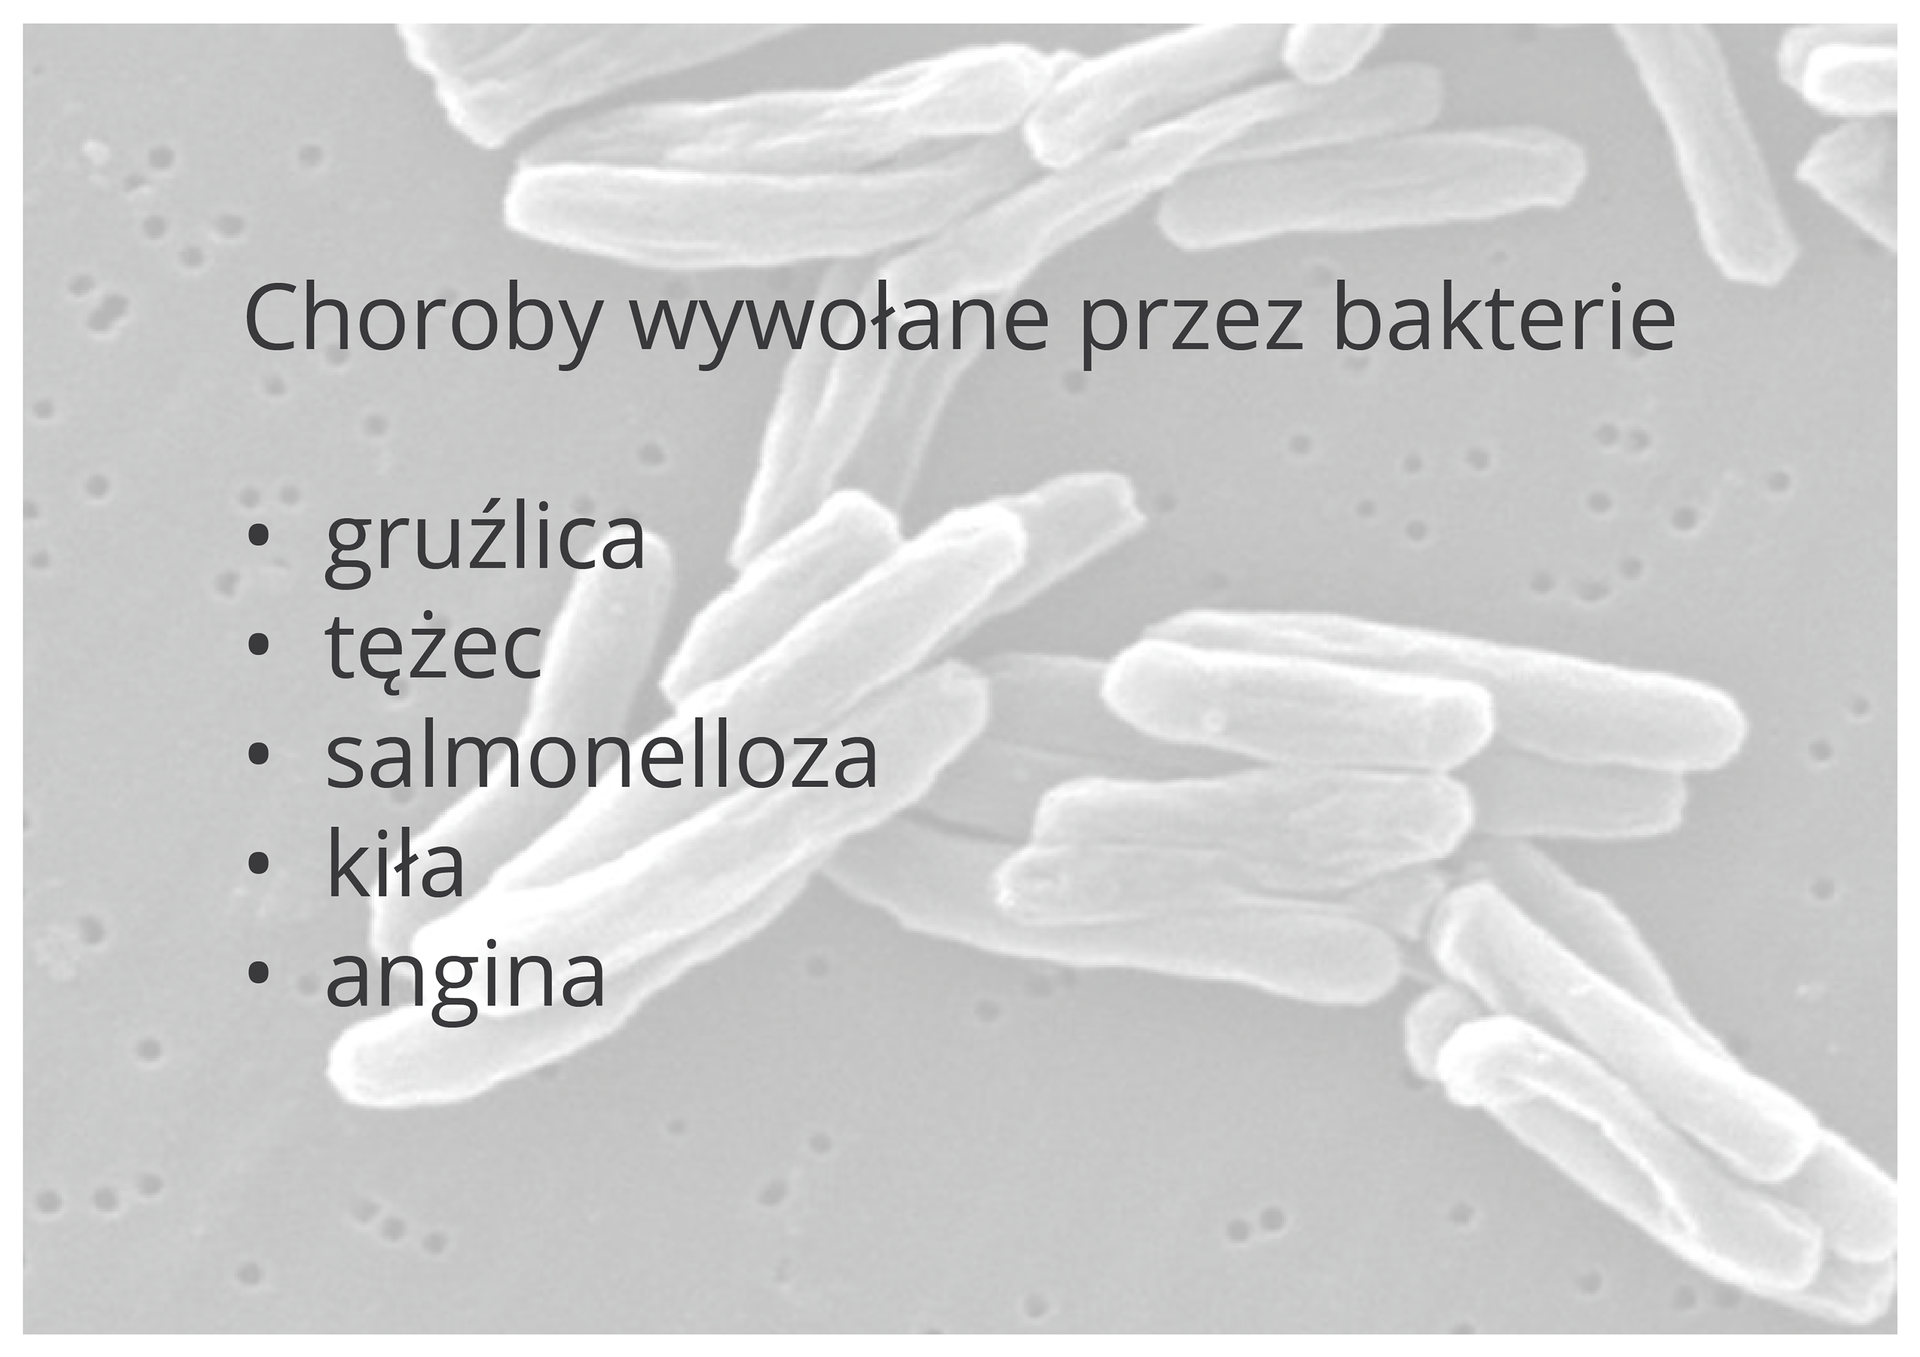 Choroby wywołane przez bakterie